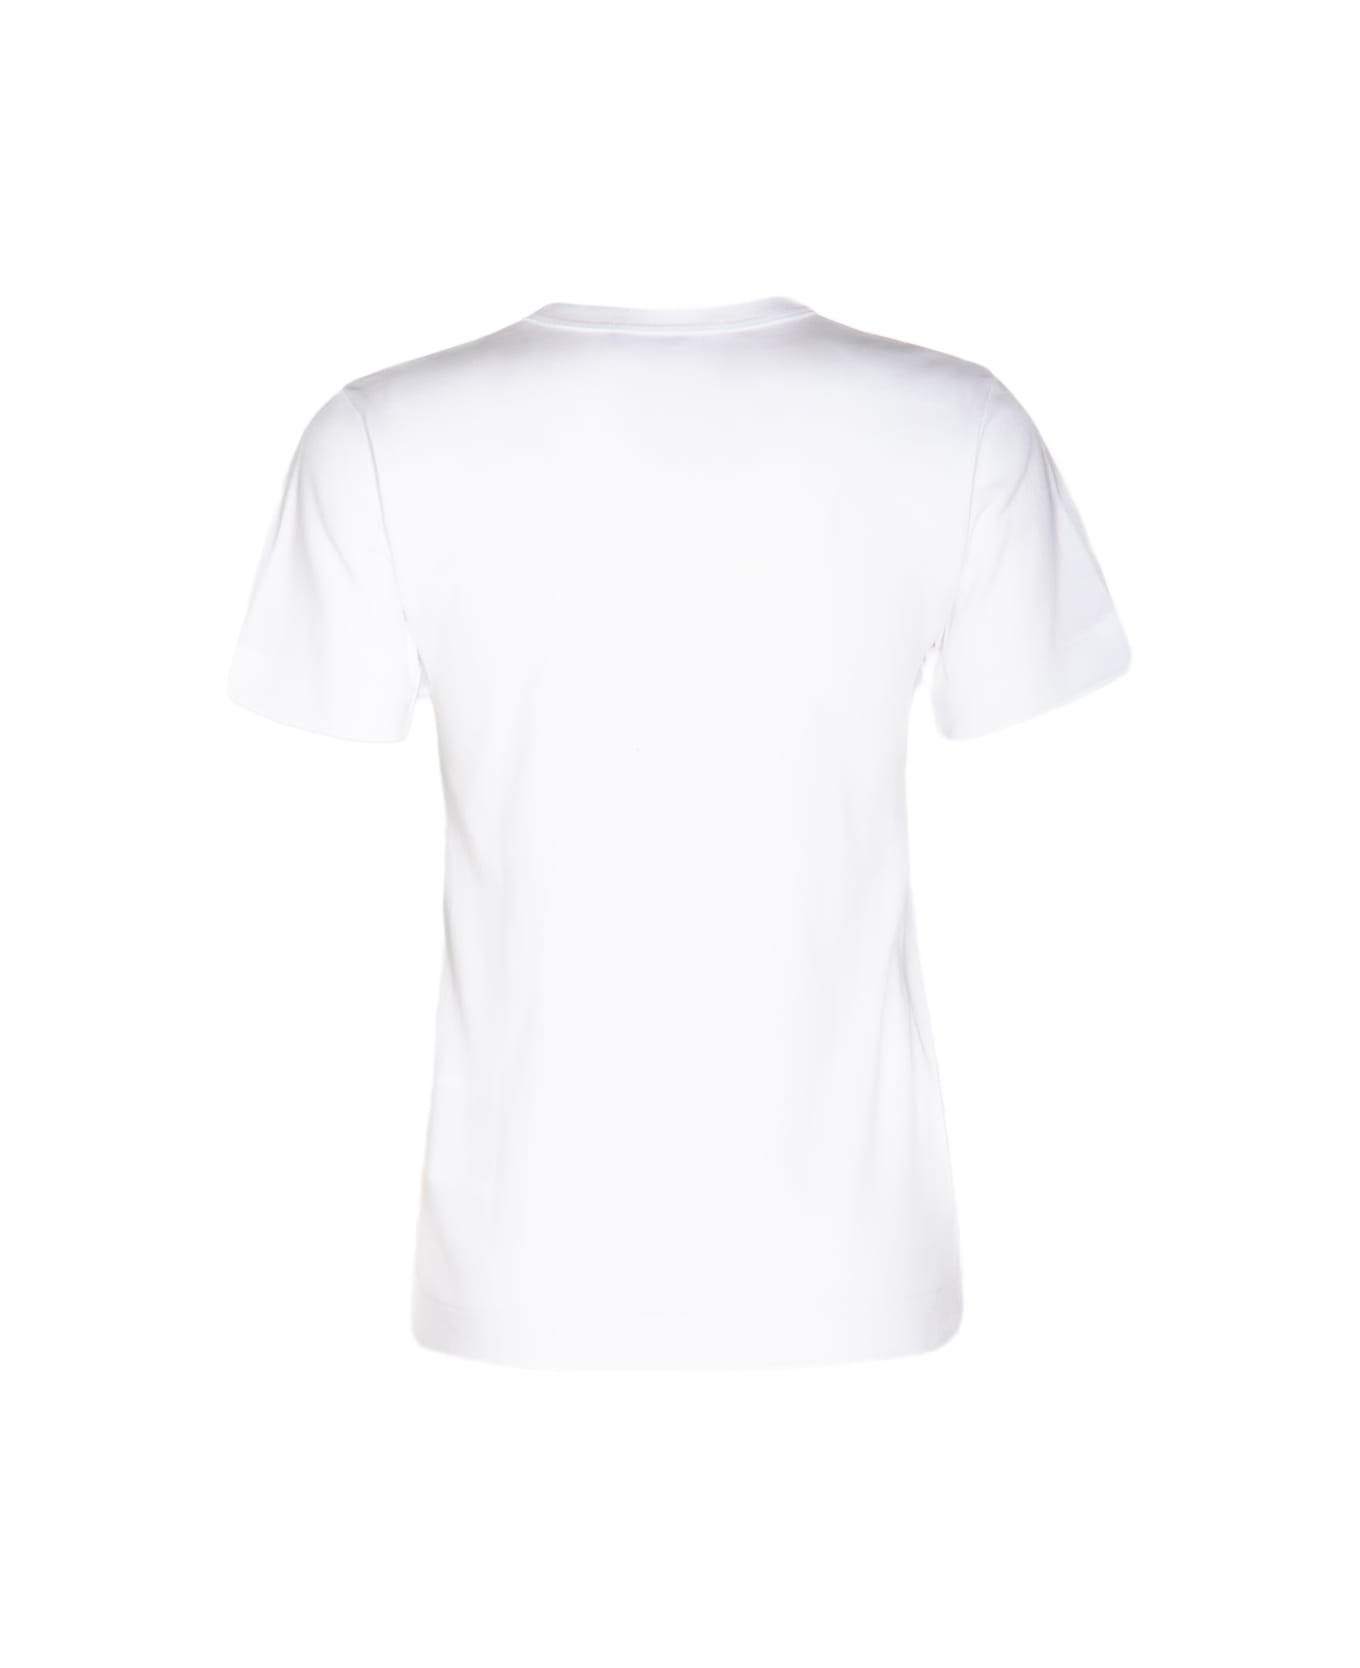 Comme des Garçons Play White Cotton T-shirt - White